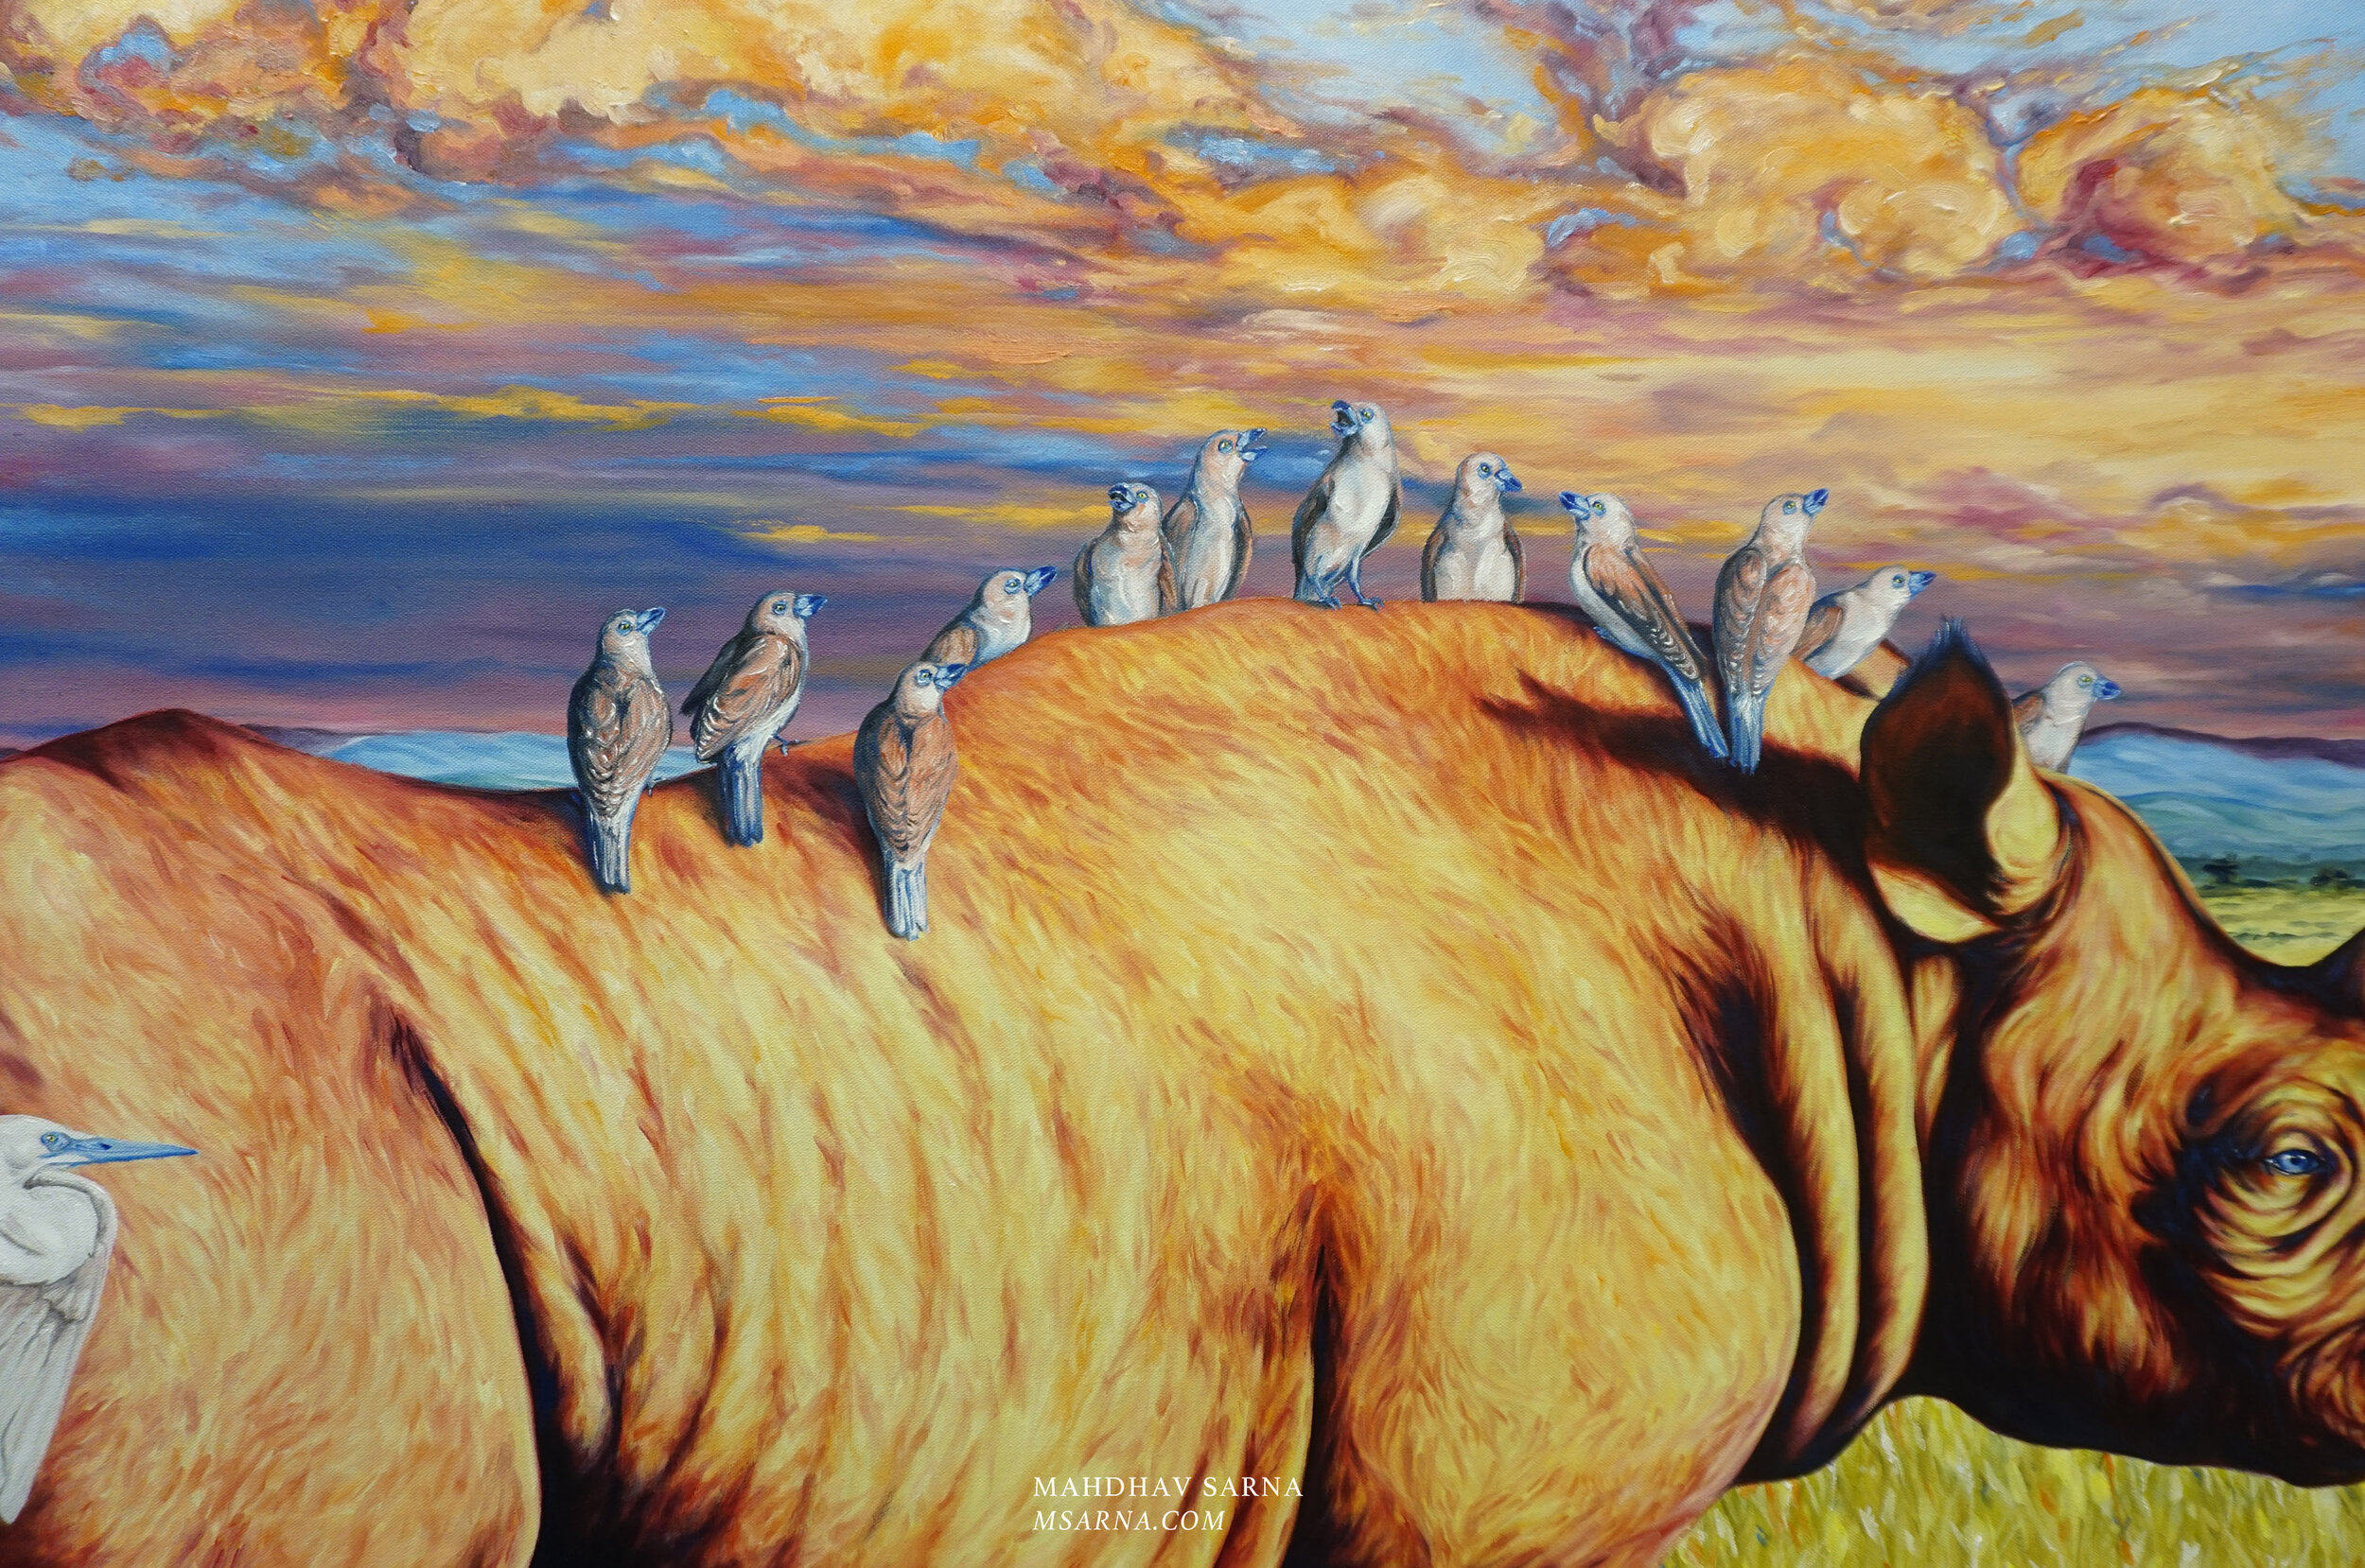 black rhino oil painting thkg wildlife art mahdhav sarna 04.jpg